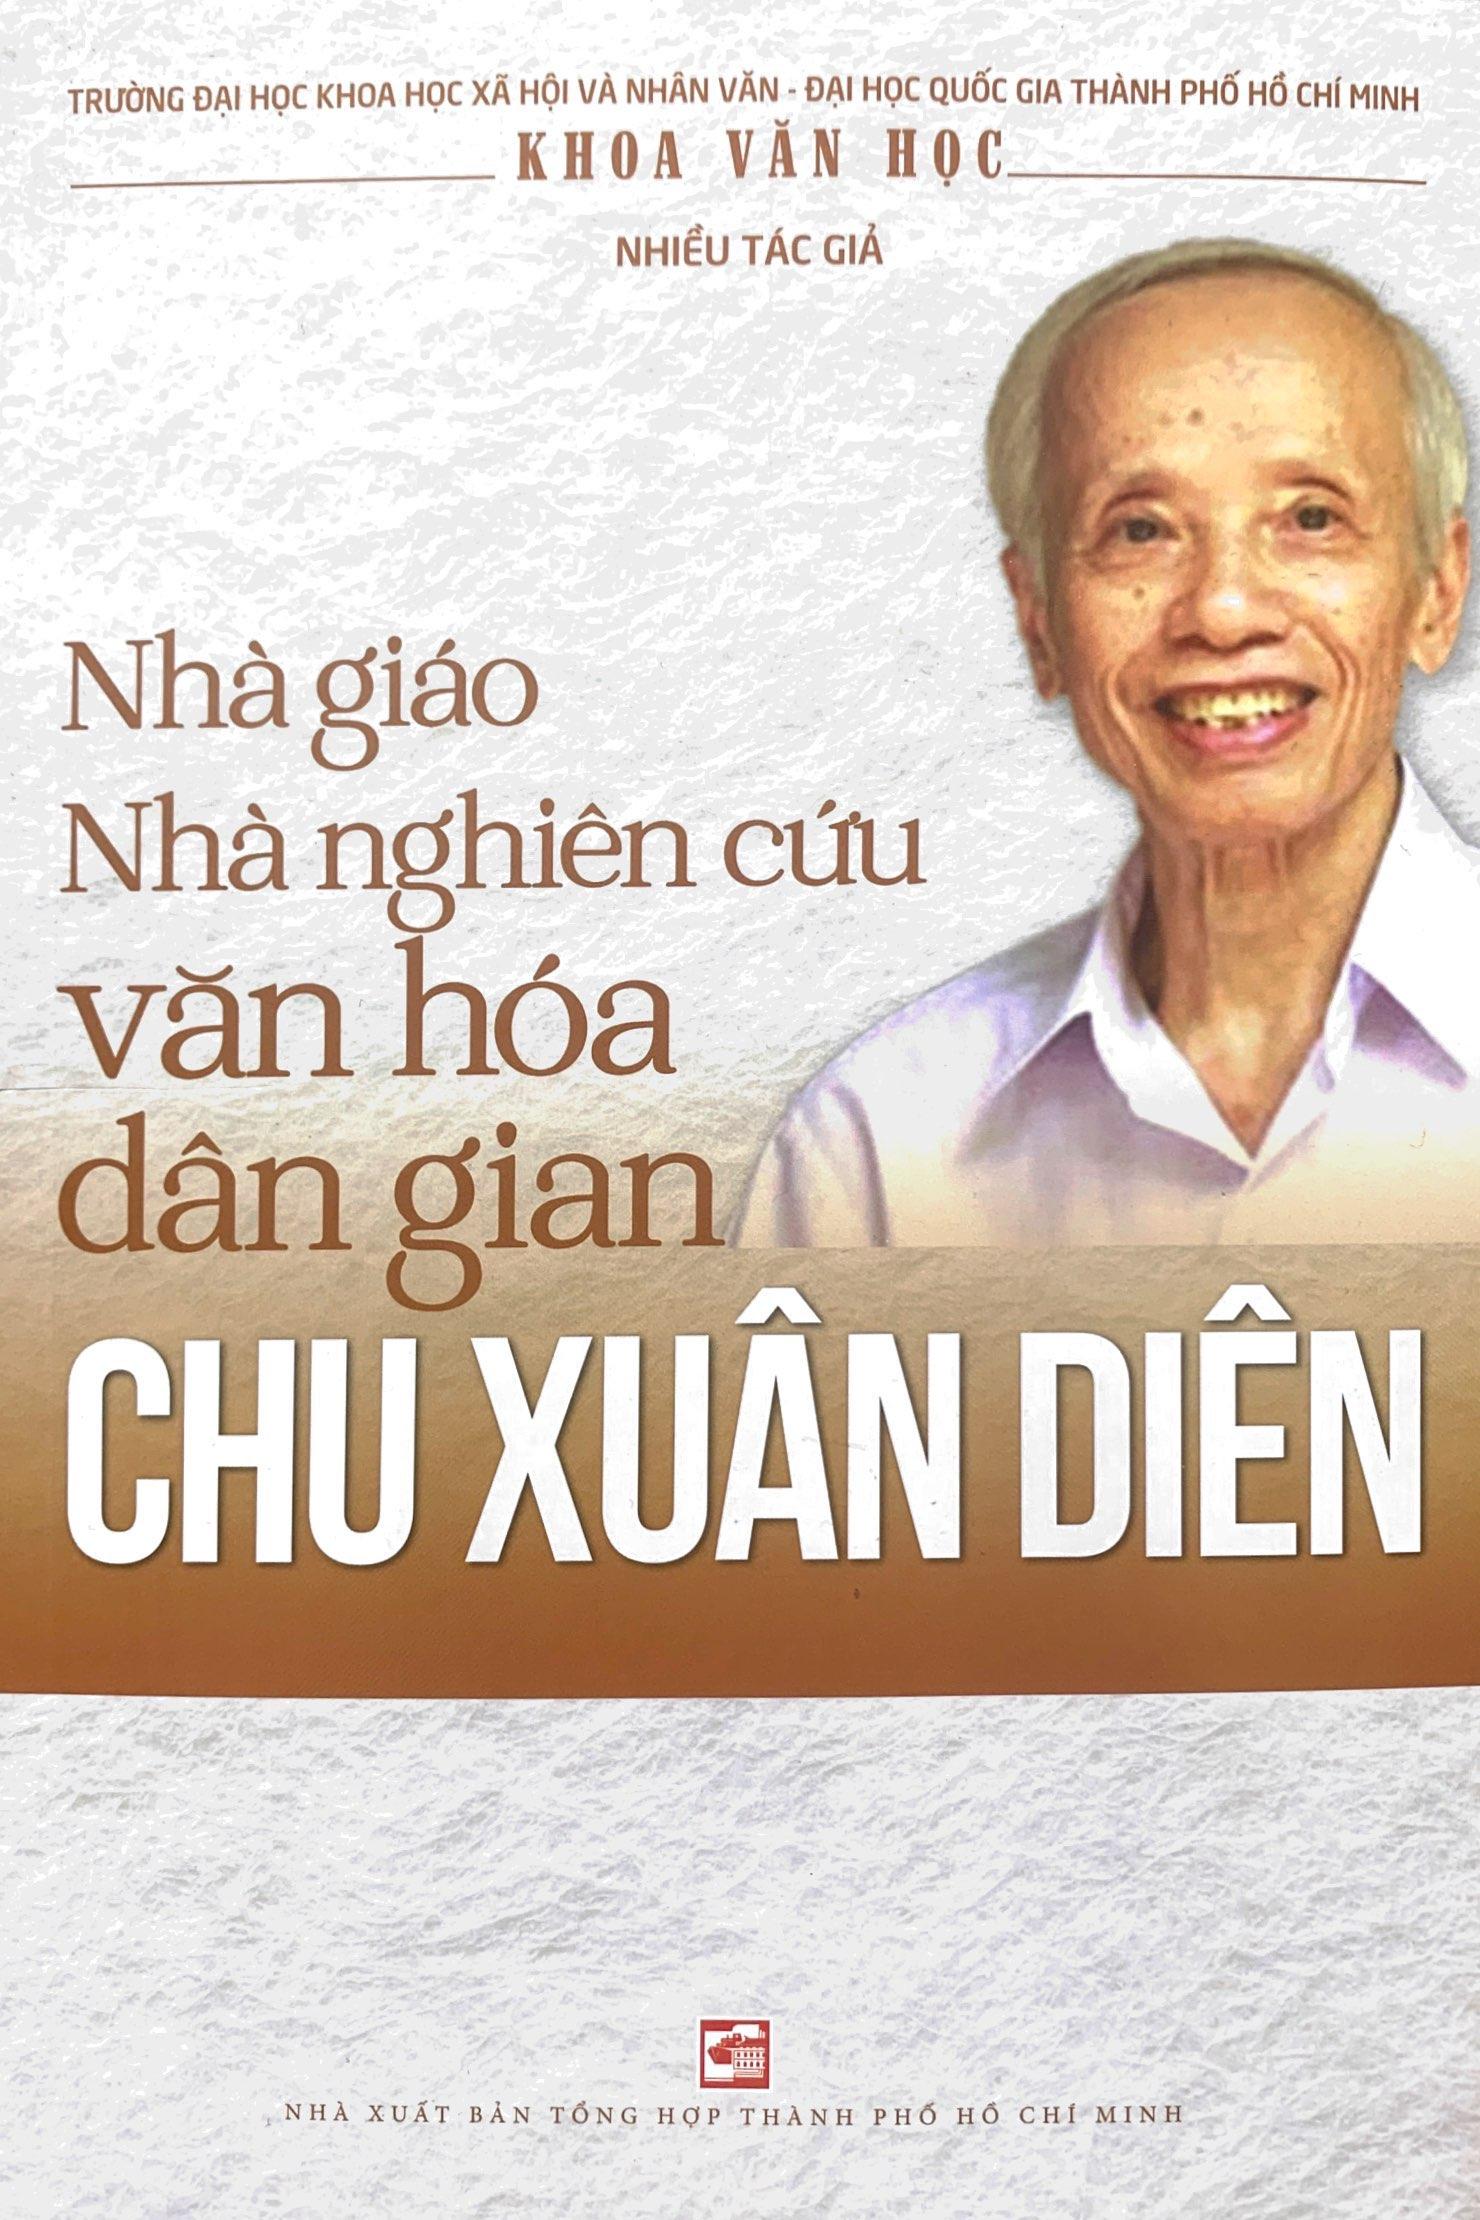 Hình ảnh Nhà Giáo Nghiên Cứu Văn Hóa Dân Gian Chu Xuân Diên